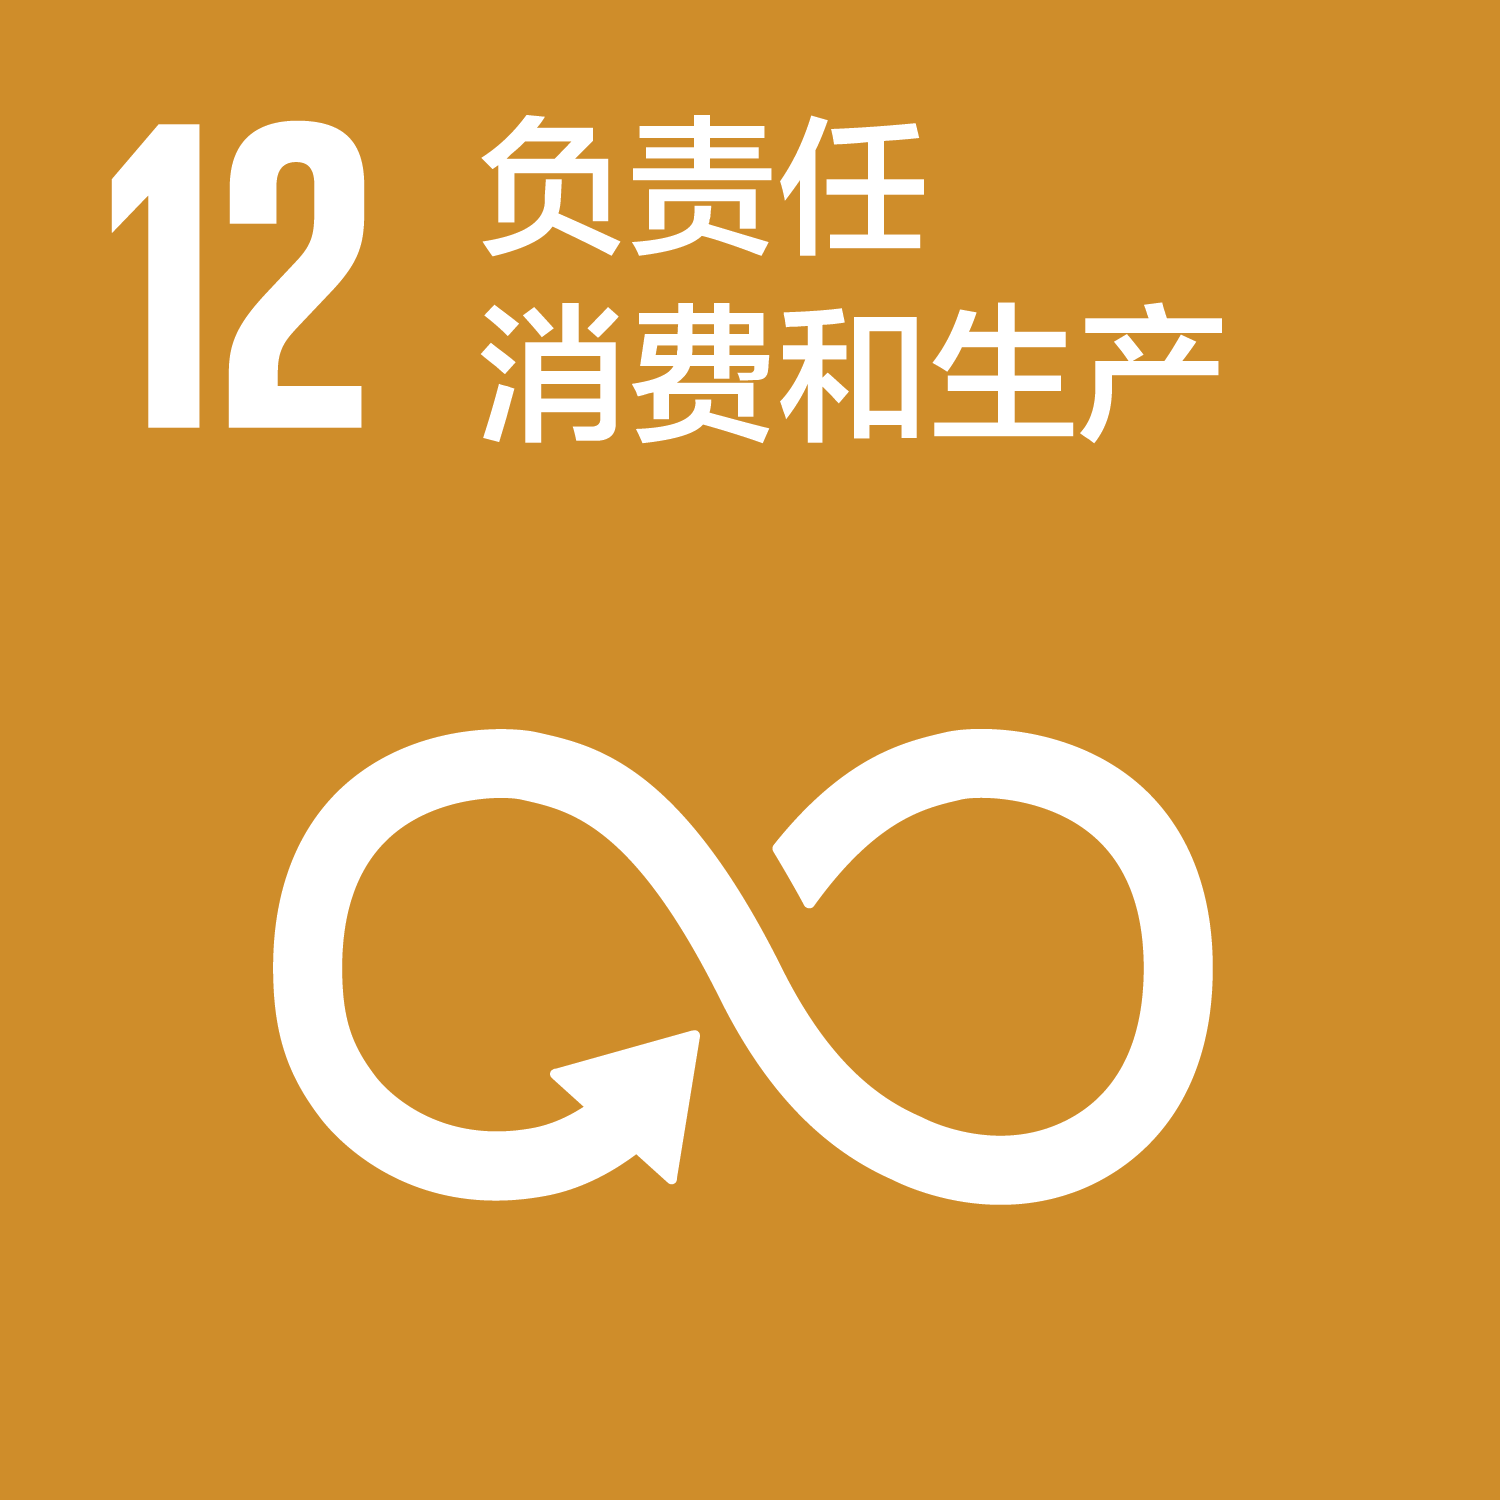 可持续发展目标-12负责仁消费和生产